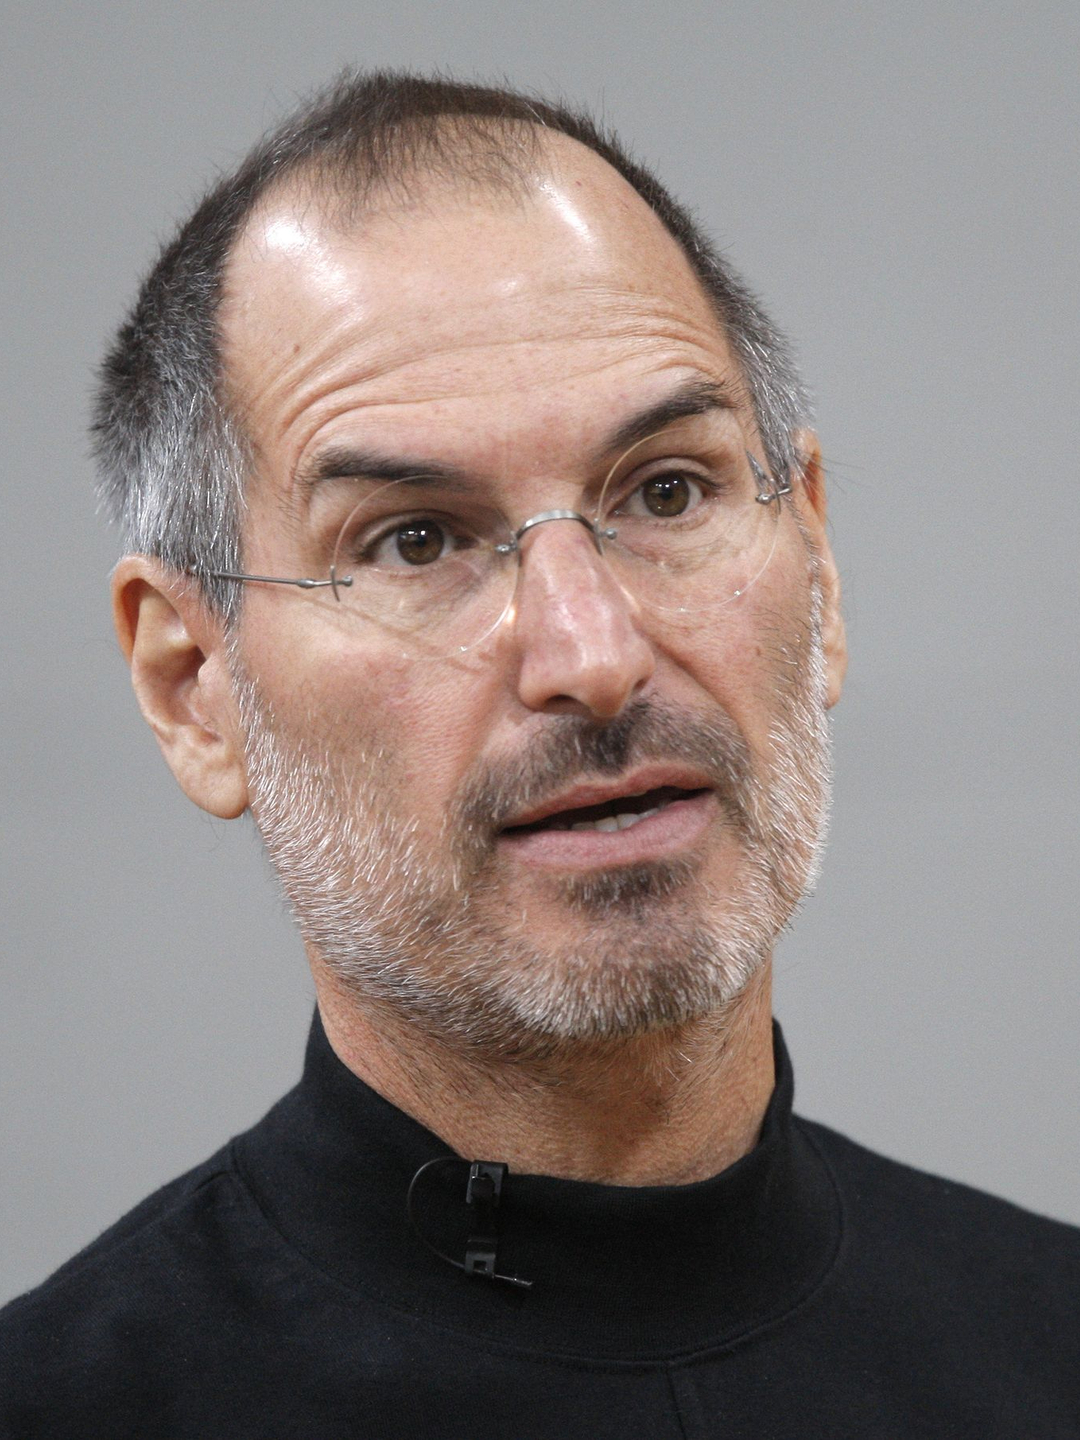 Steve Jobs when did he die